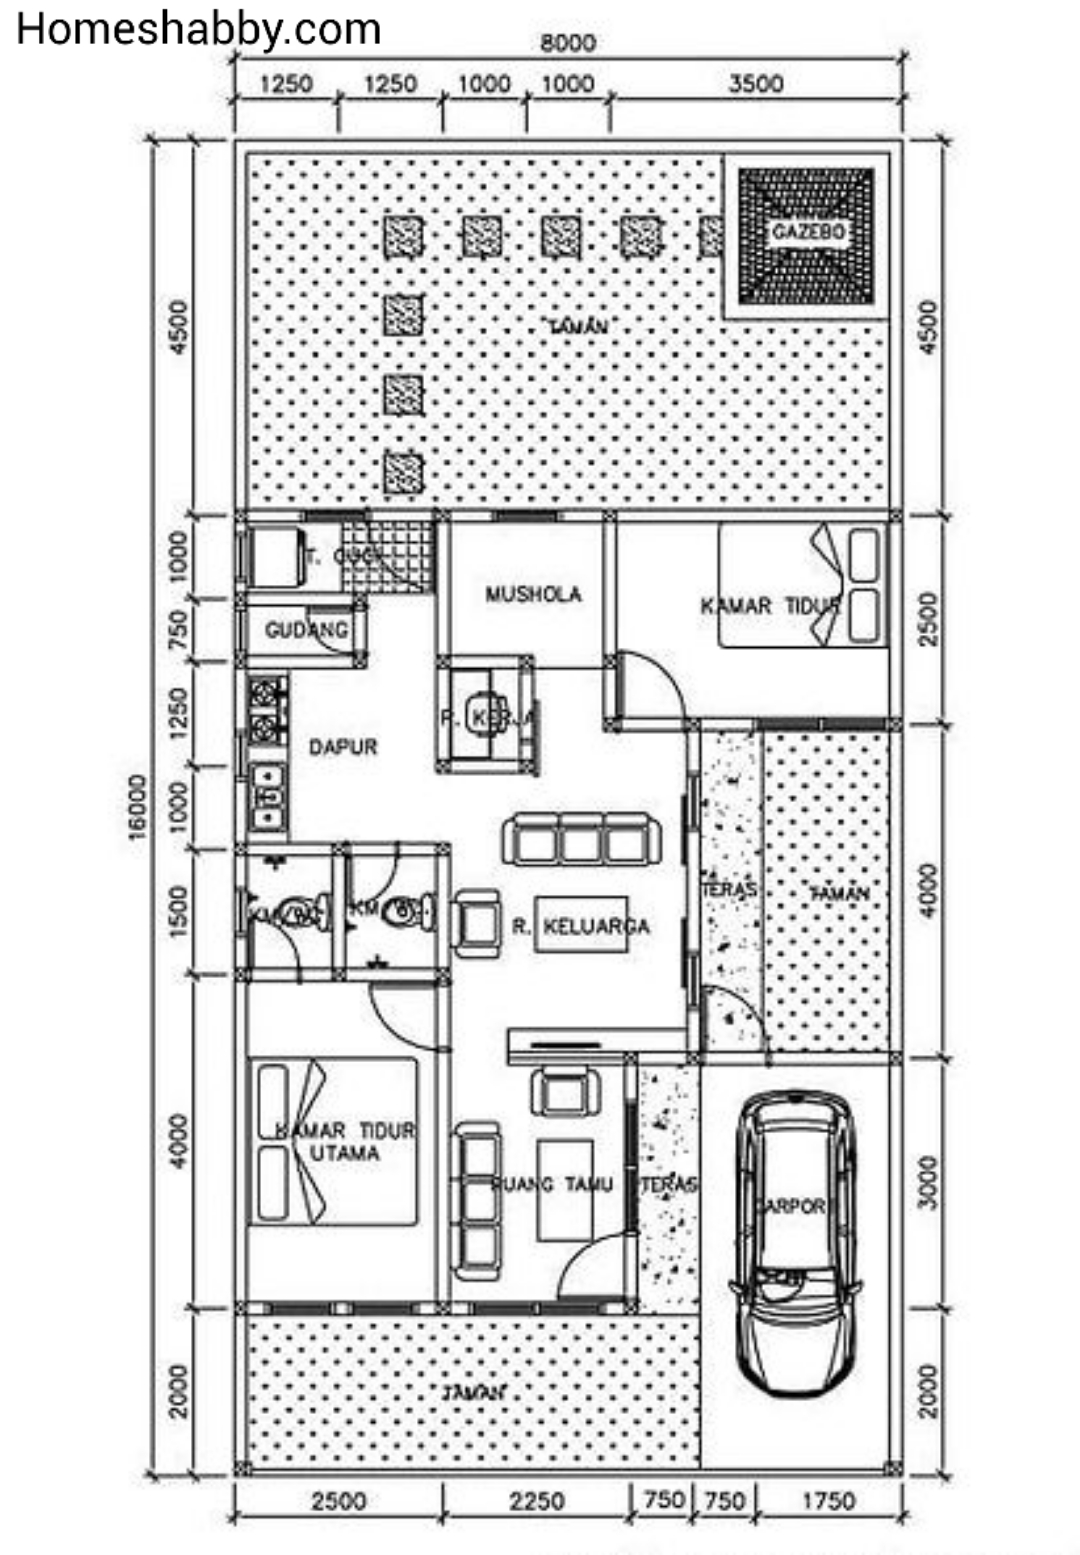 Desain Dan Denah Rumah Ukuran 8 X 16 M Ada Gazebo Di Taman Belakang Untuk Bersantai Homeshabbycom Design Home Plans